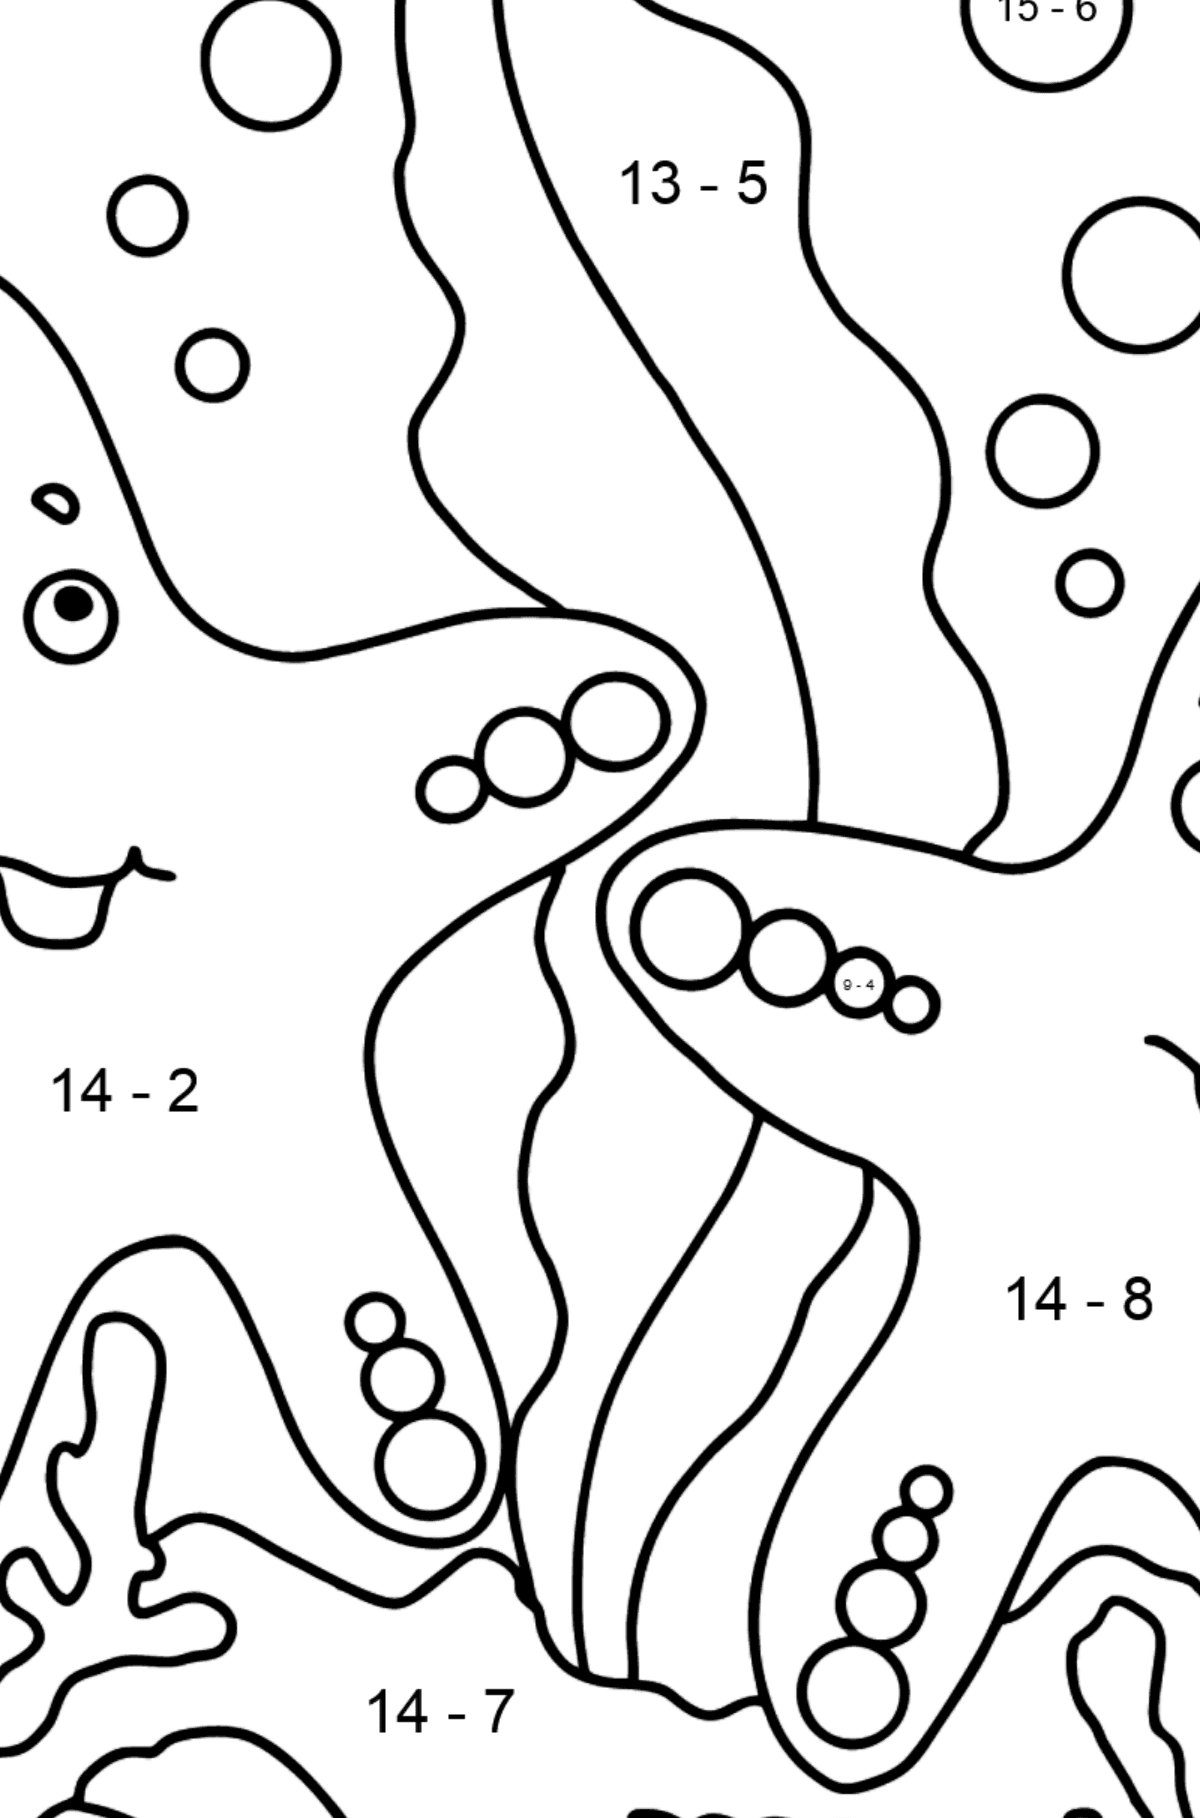 Dibujo para colorear Dos estrellas de mar (fácil) - Colorear con Matemáticas - Restas para Niños